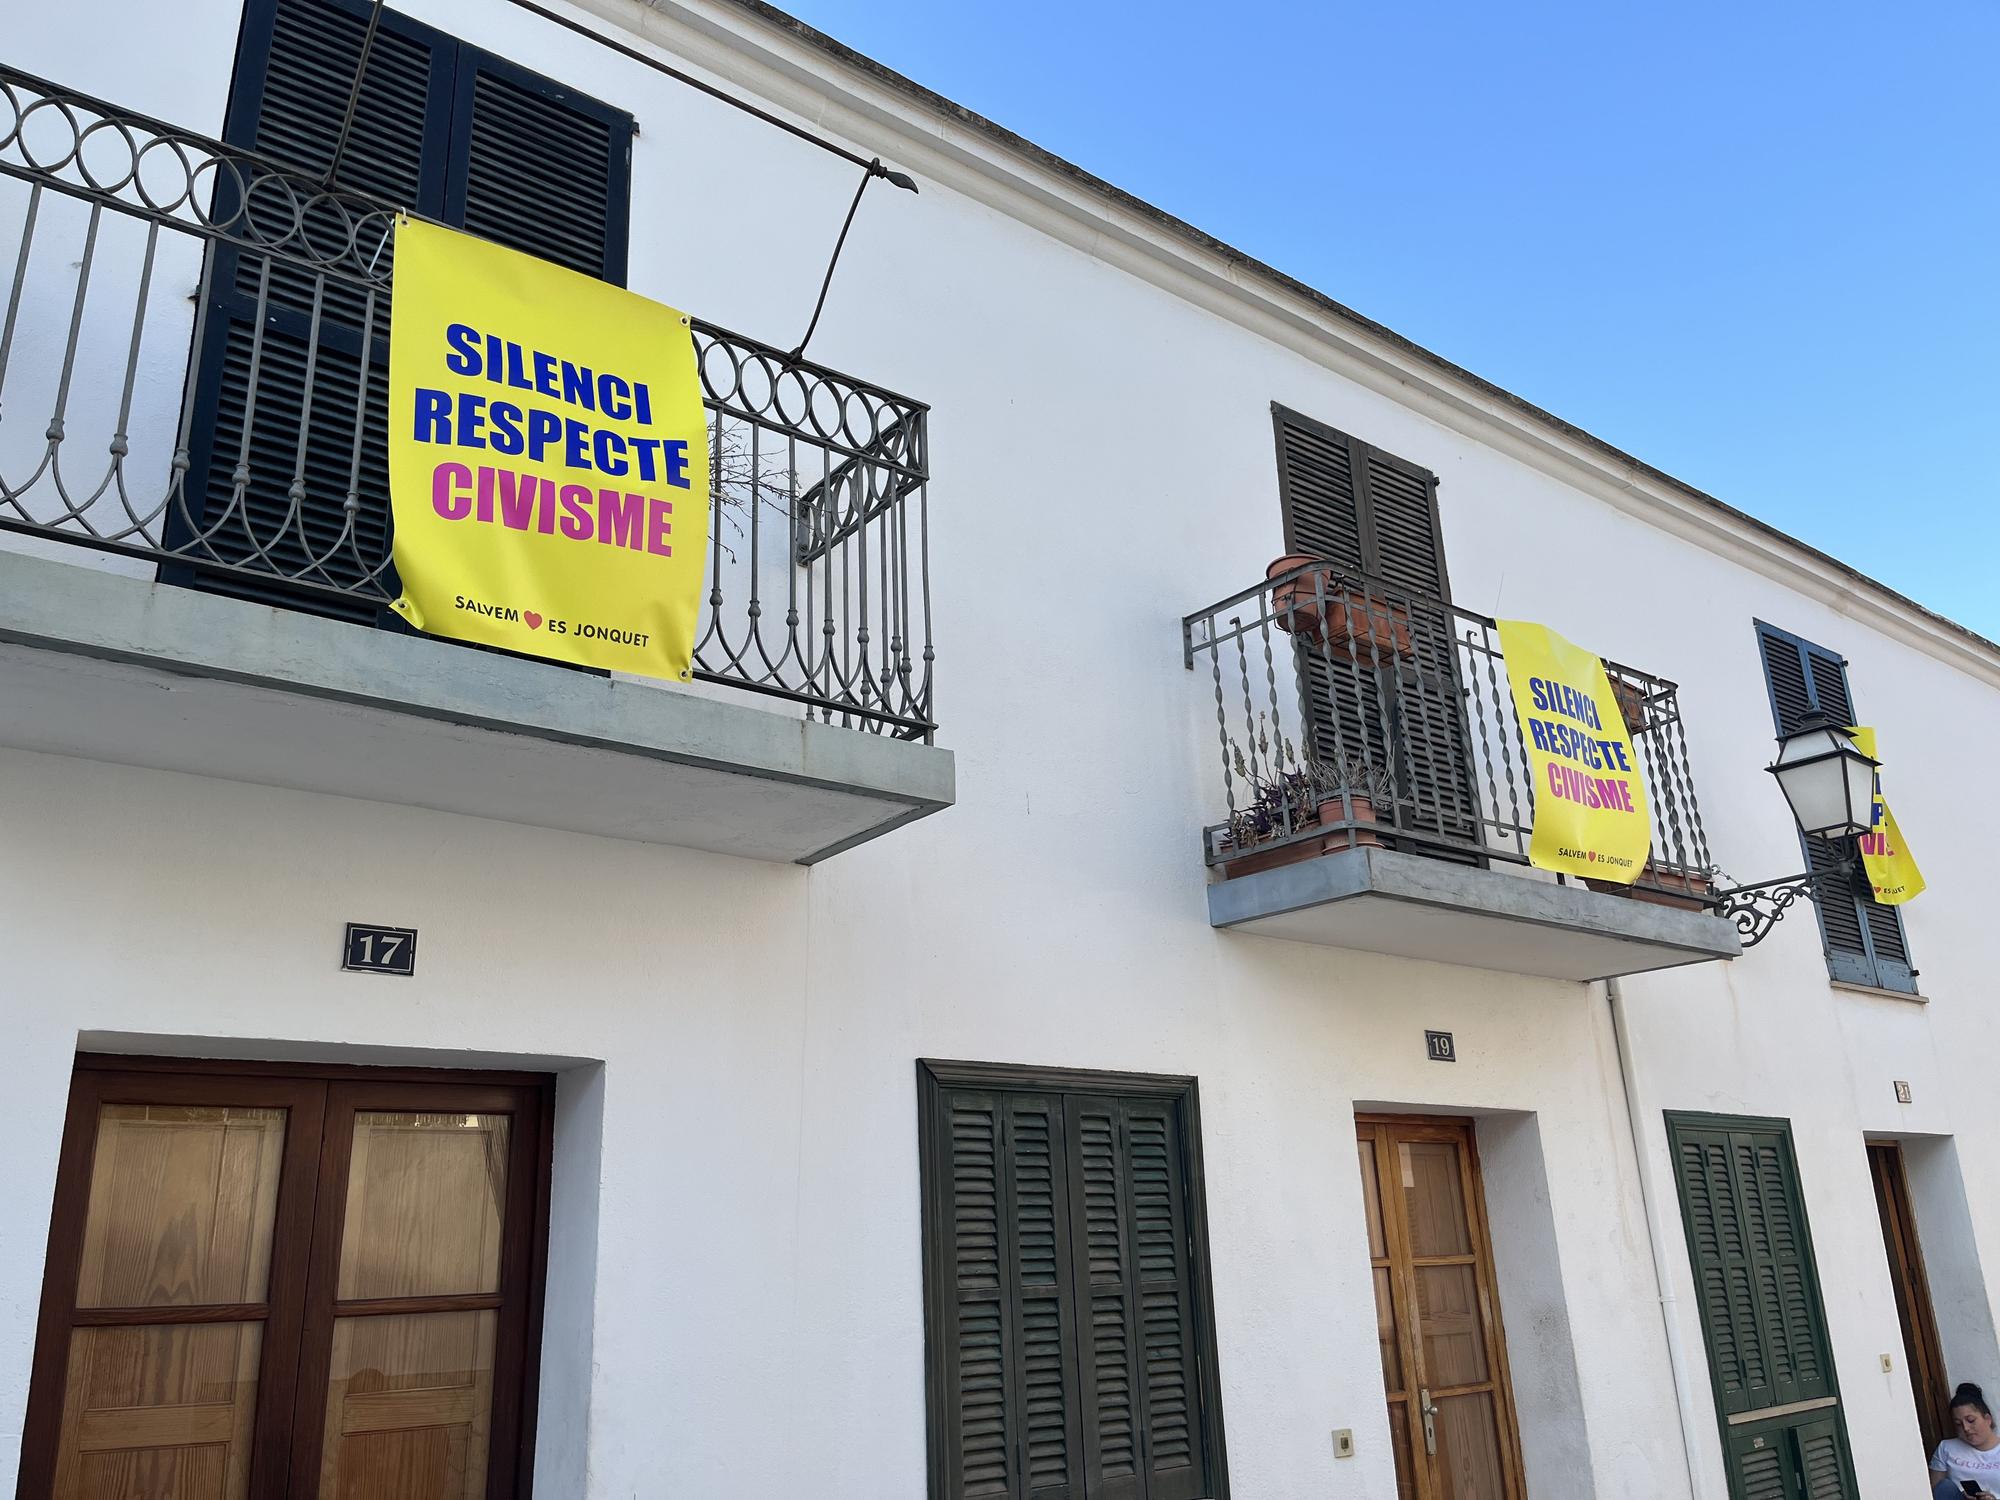 Los barrios de Santa Catalina y es Jonquet se llenan de carteles contra el incivismo